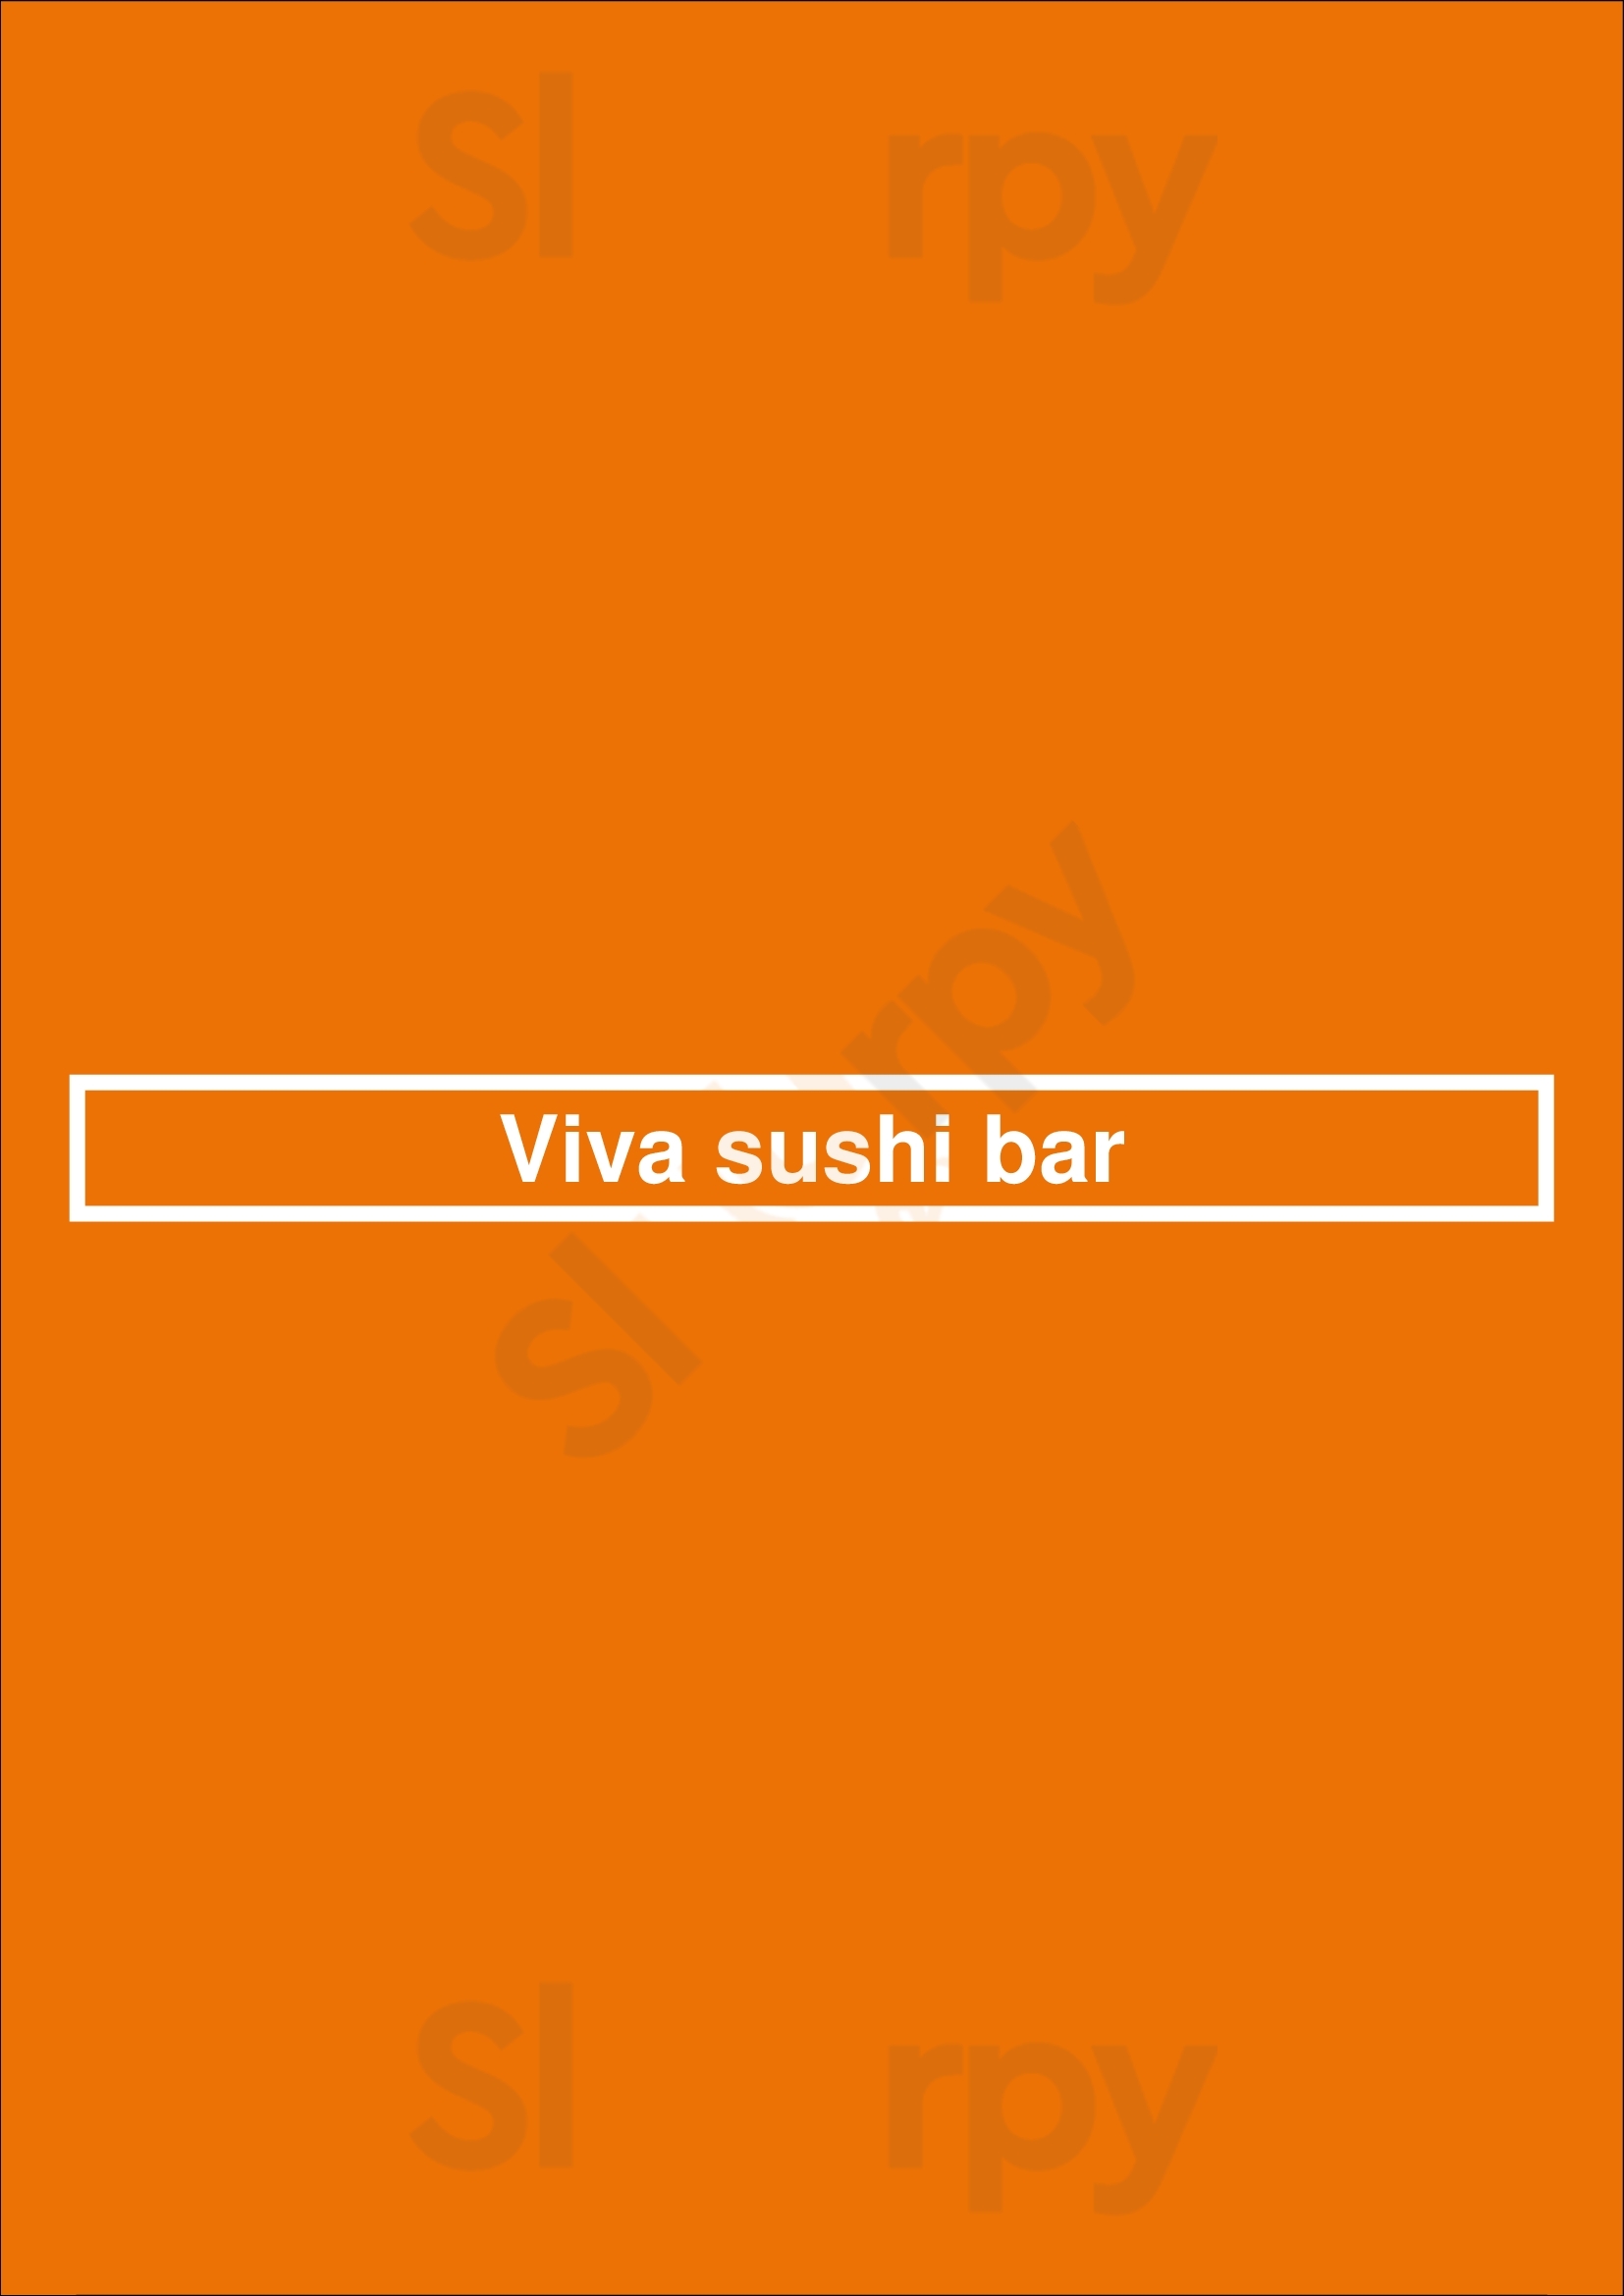 Viva Sushi Bar Vancouver Menu - 1